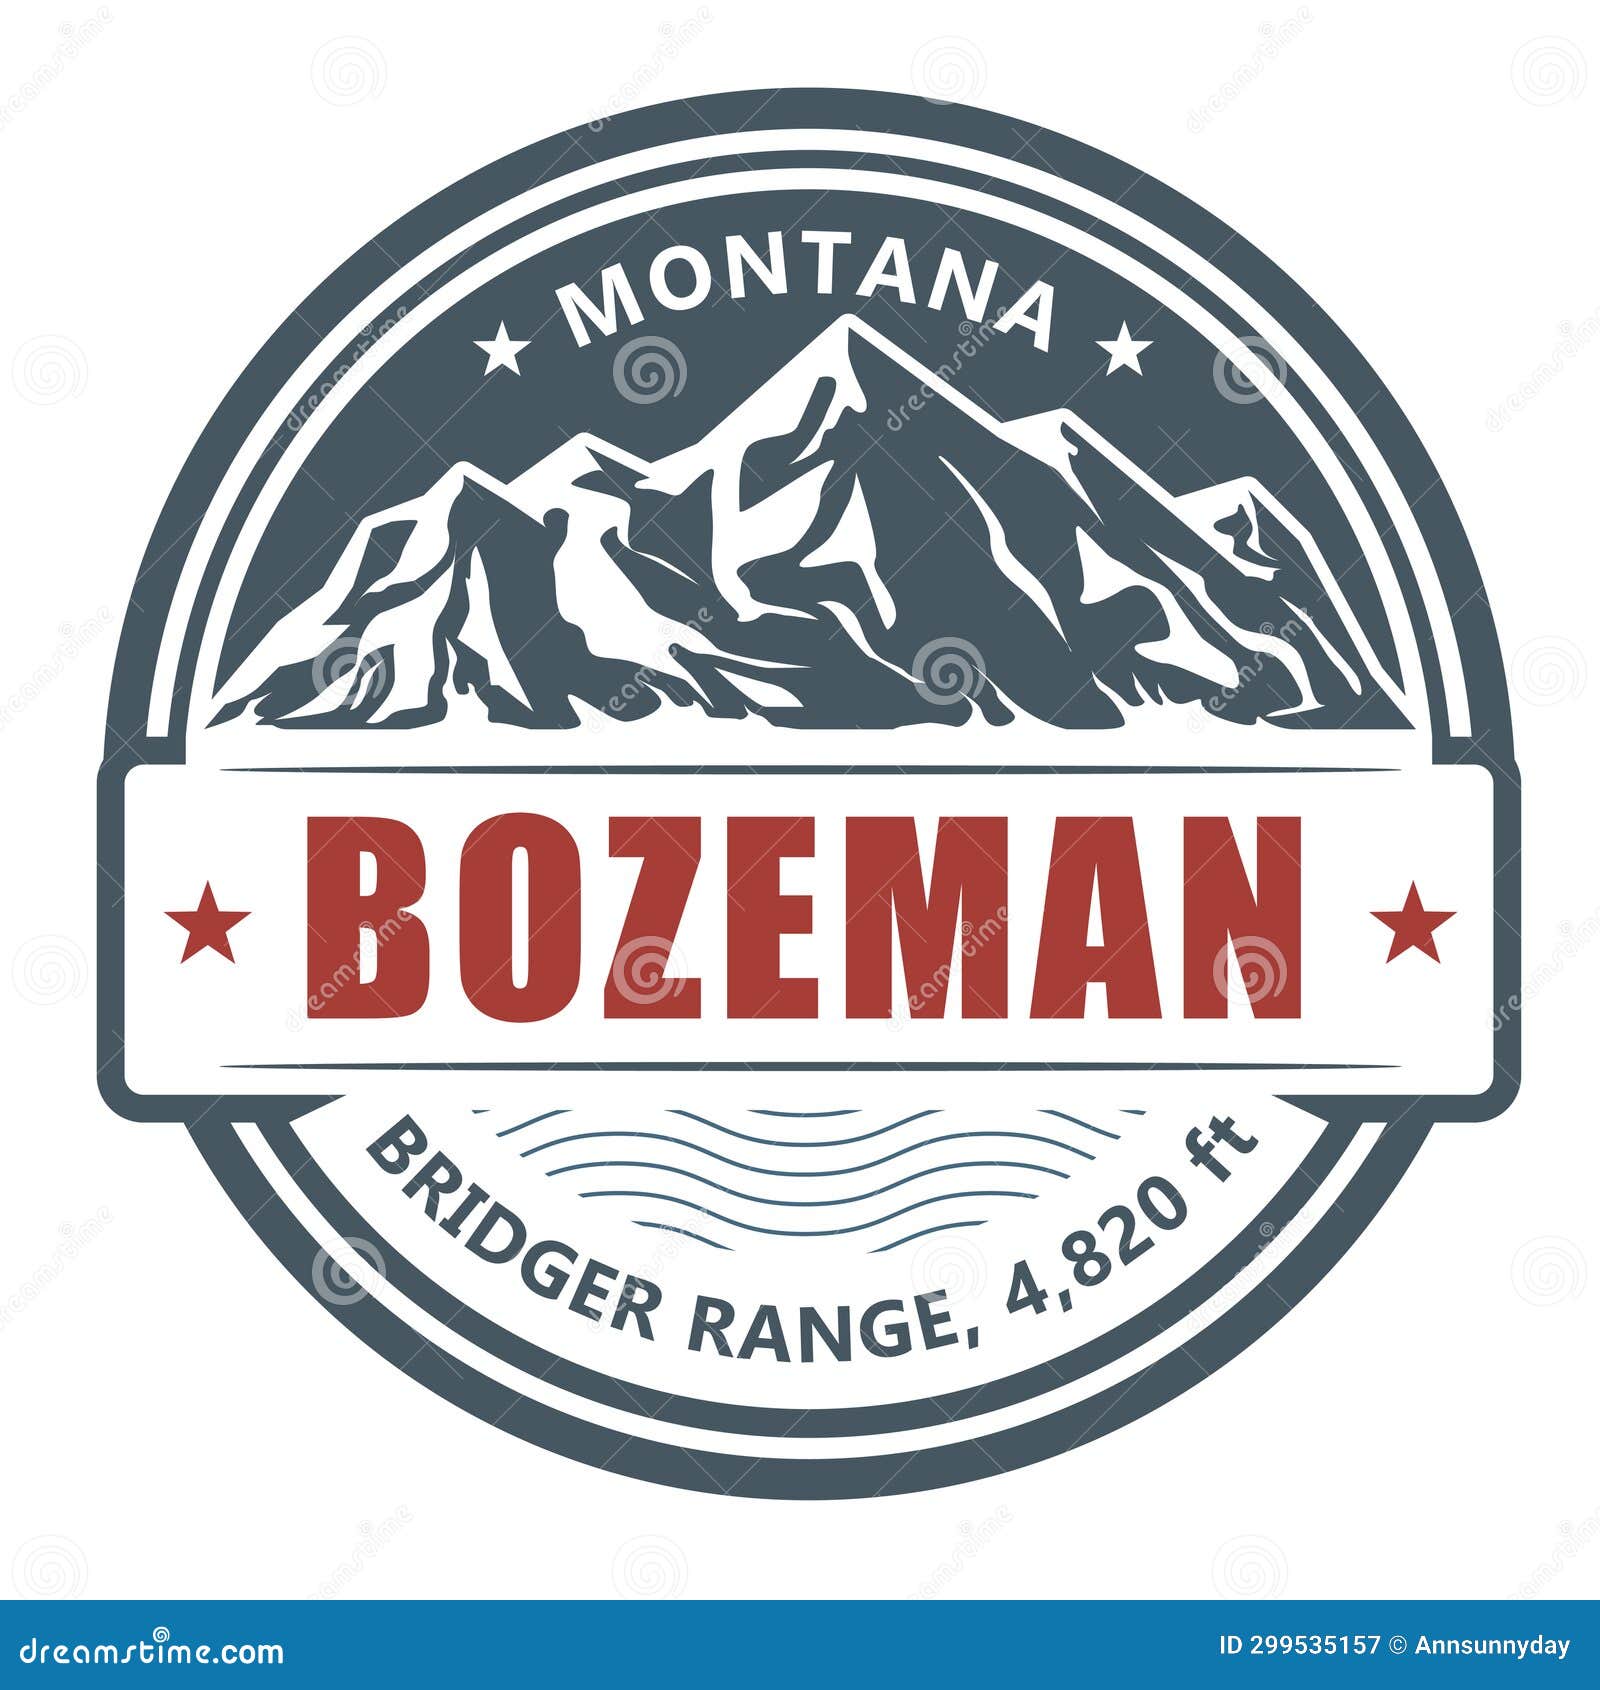 bozeman, ski resort stamp, utah bridger range emblem with snow covered mountains